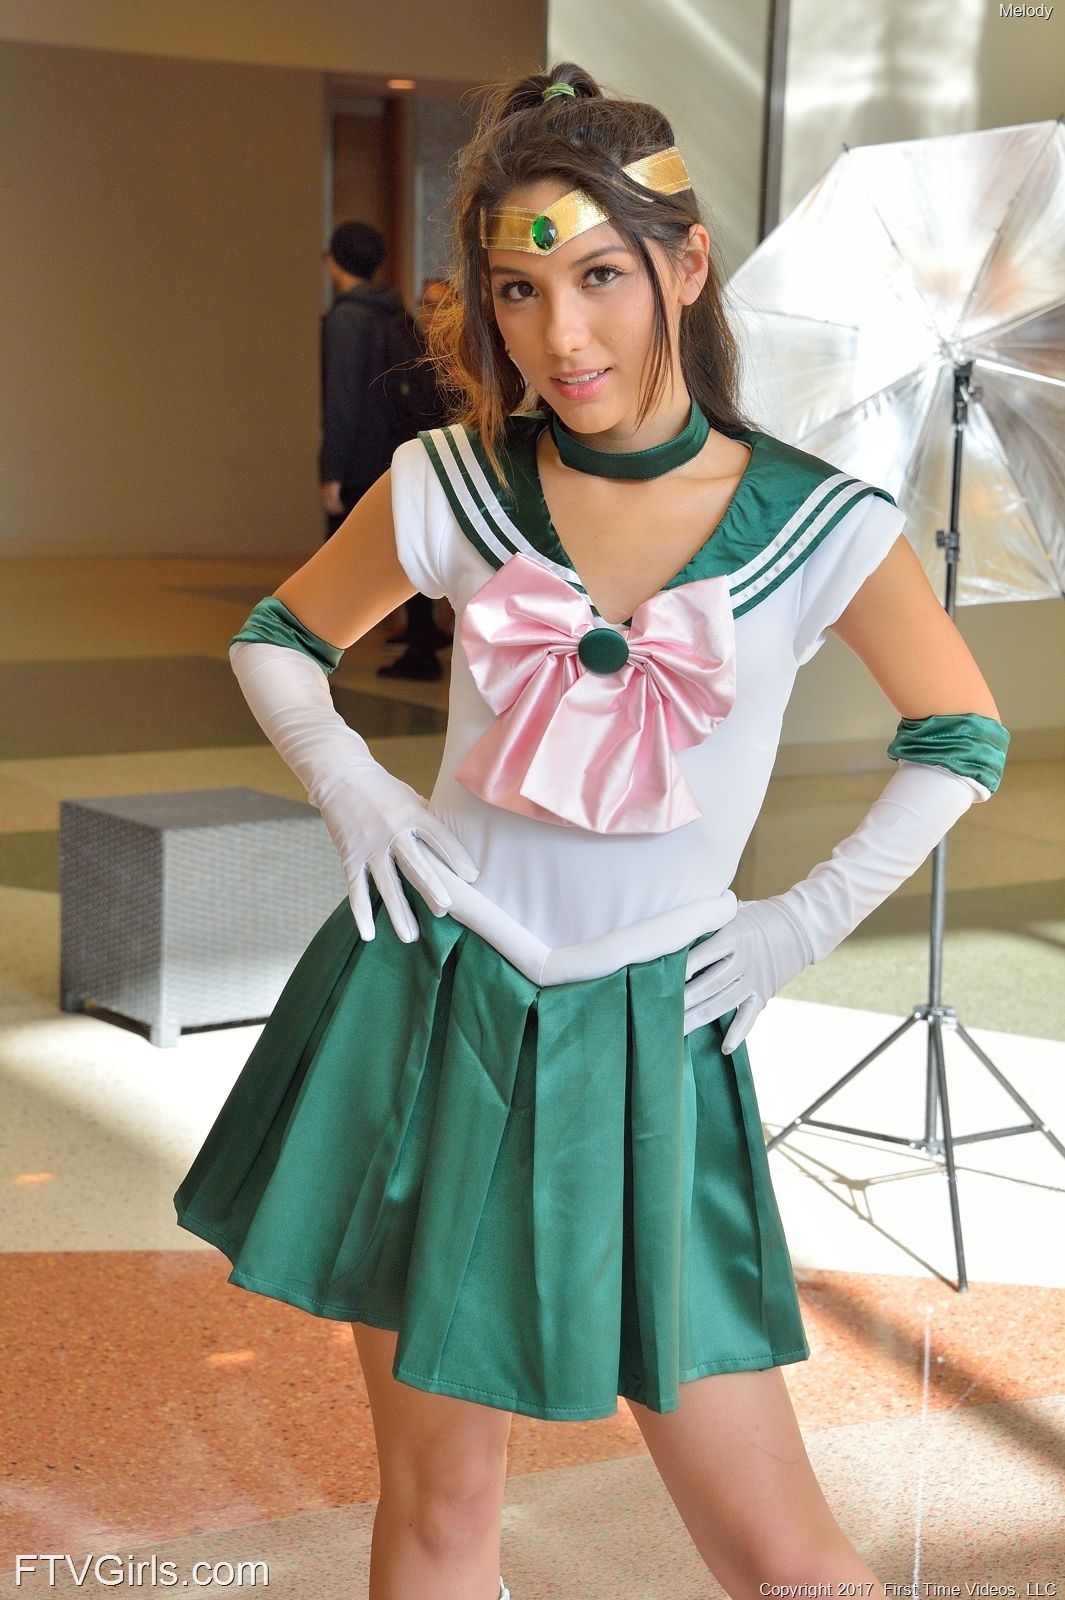 Melody Wylde as Sailor Jupiter 50